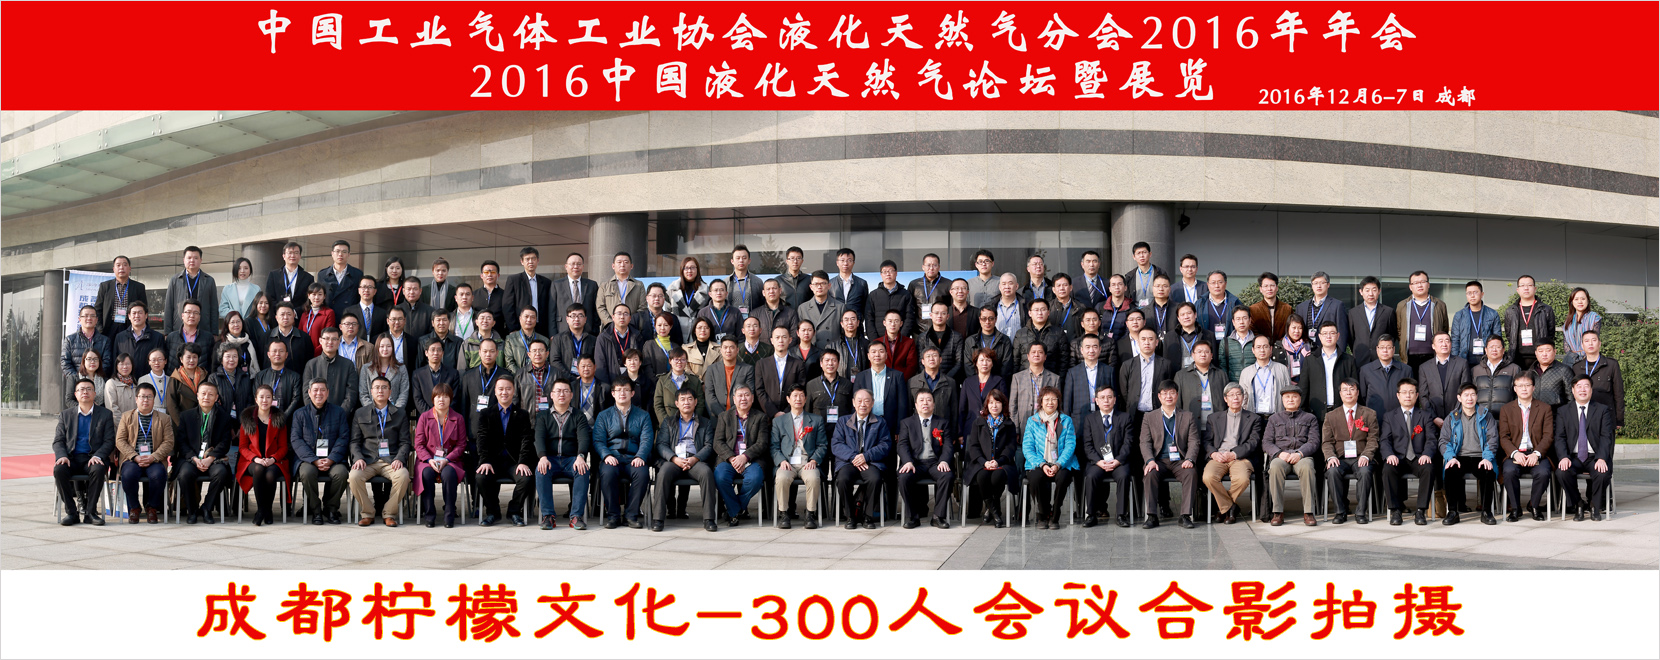 300人会议合影拍摄-2016中国液化气天然气论坛暨展览会议